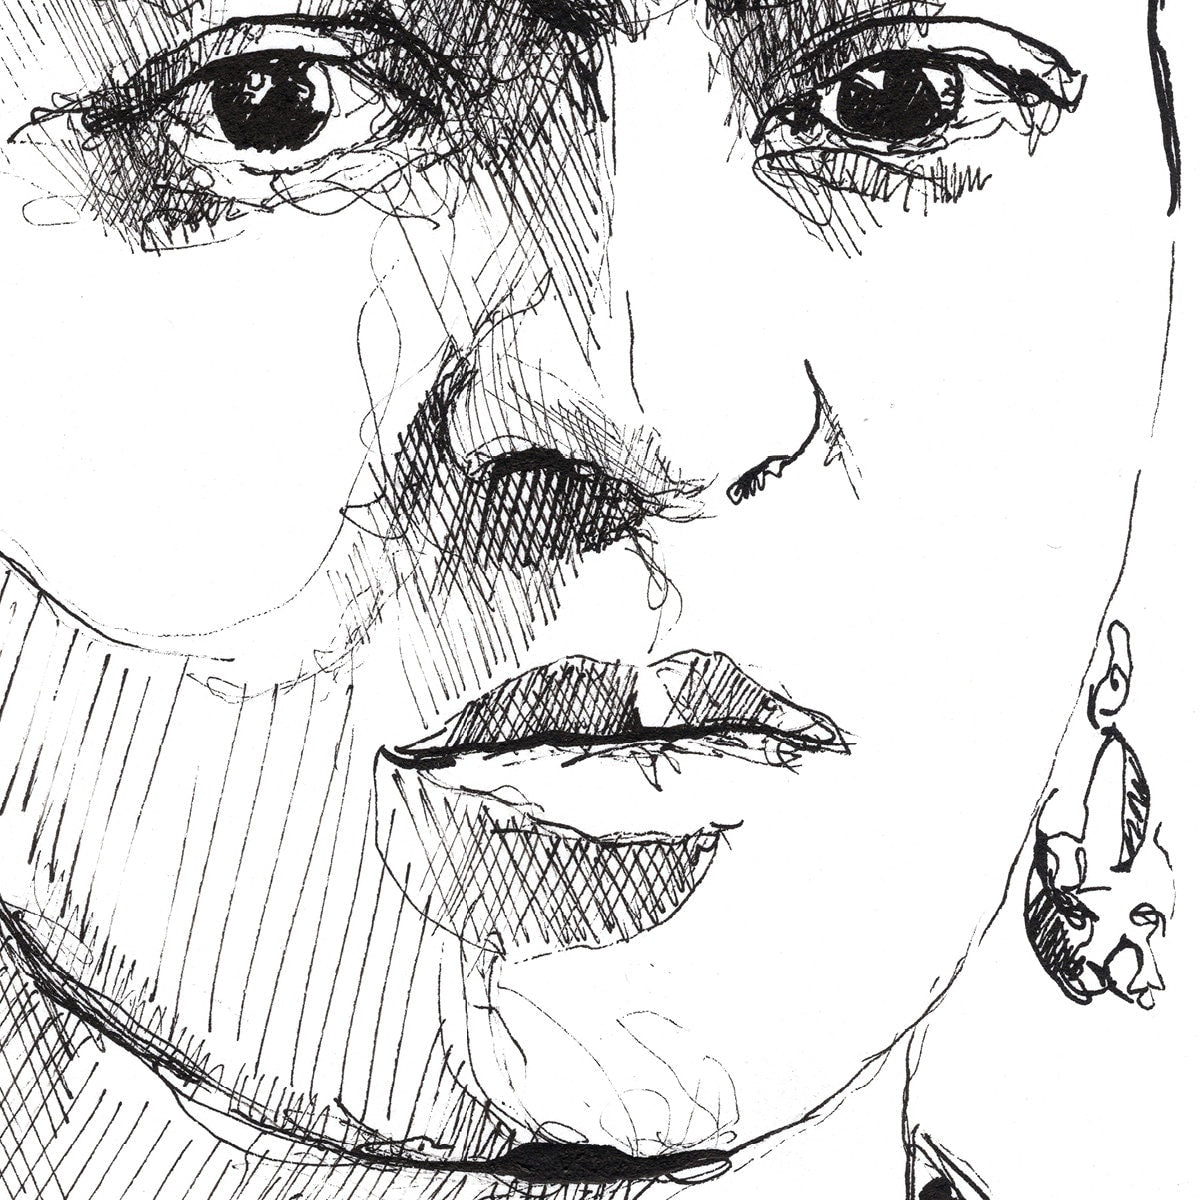 Portrait of Frida Kahlo - Original Ink on Paper